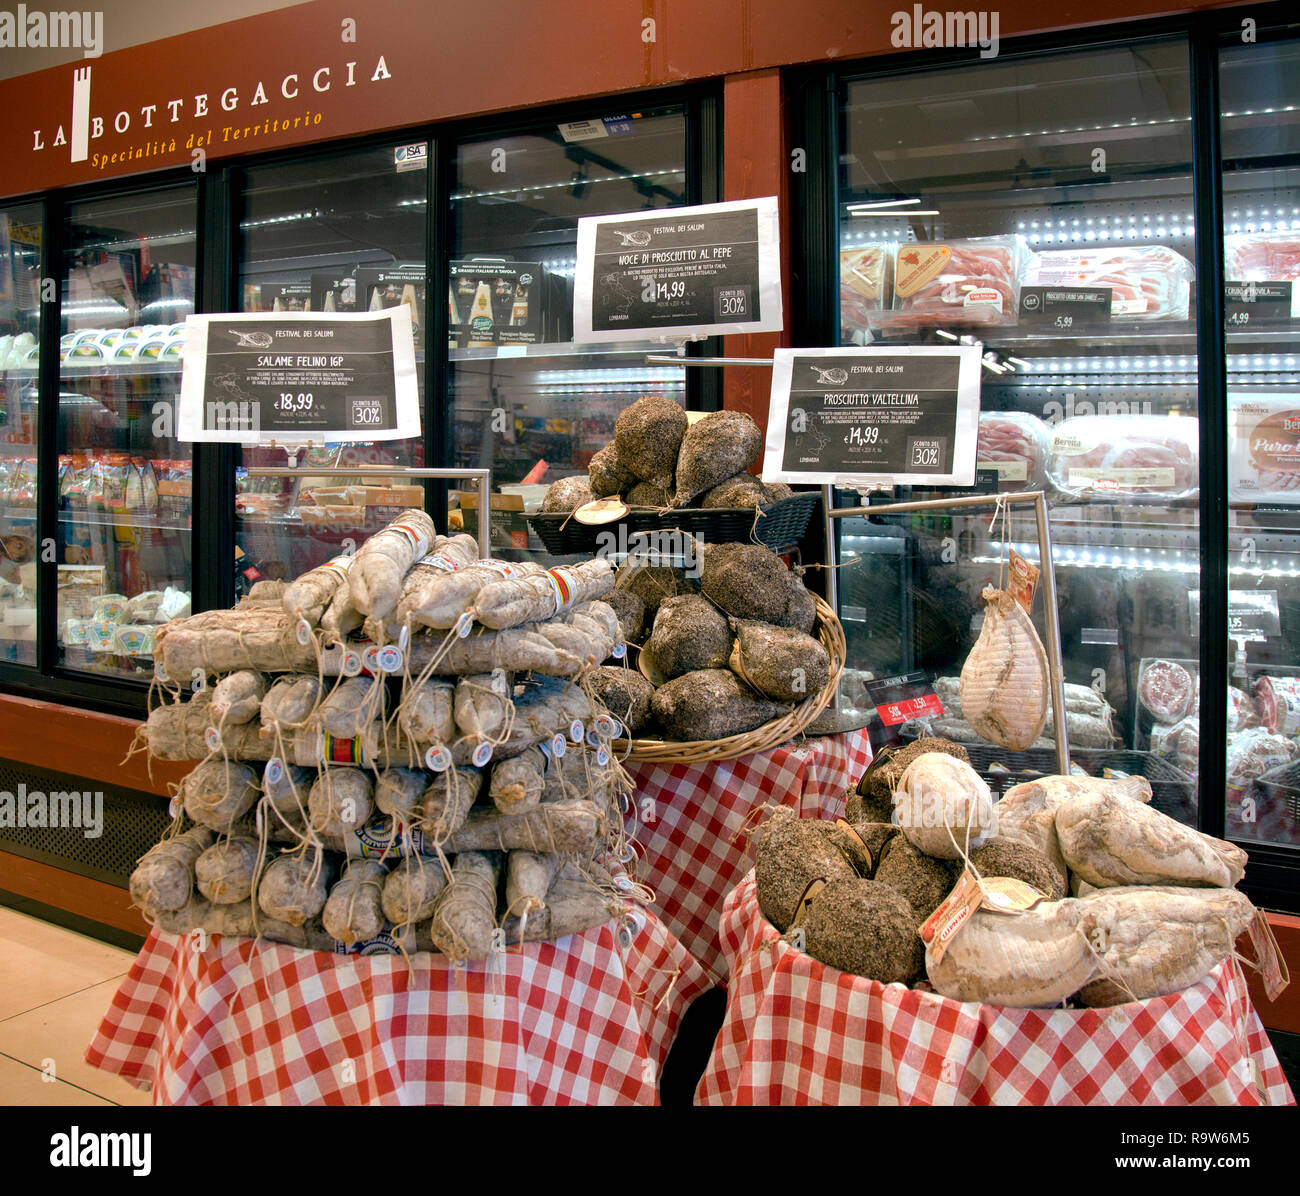 Spécialités régionales -- plusieurs types de jambon, salami, et fromages -- tenter les voyageurs au bord d'un dépanneur dans l'Italie centrale. Banque D'Images